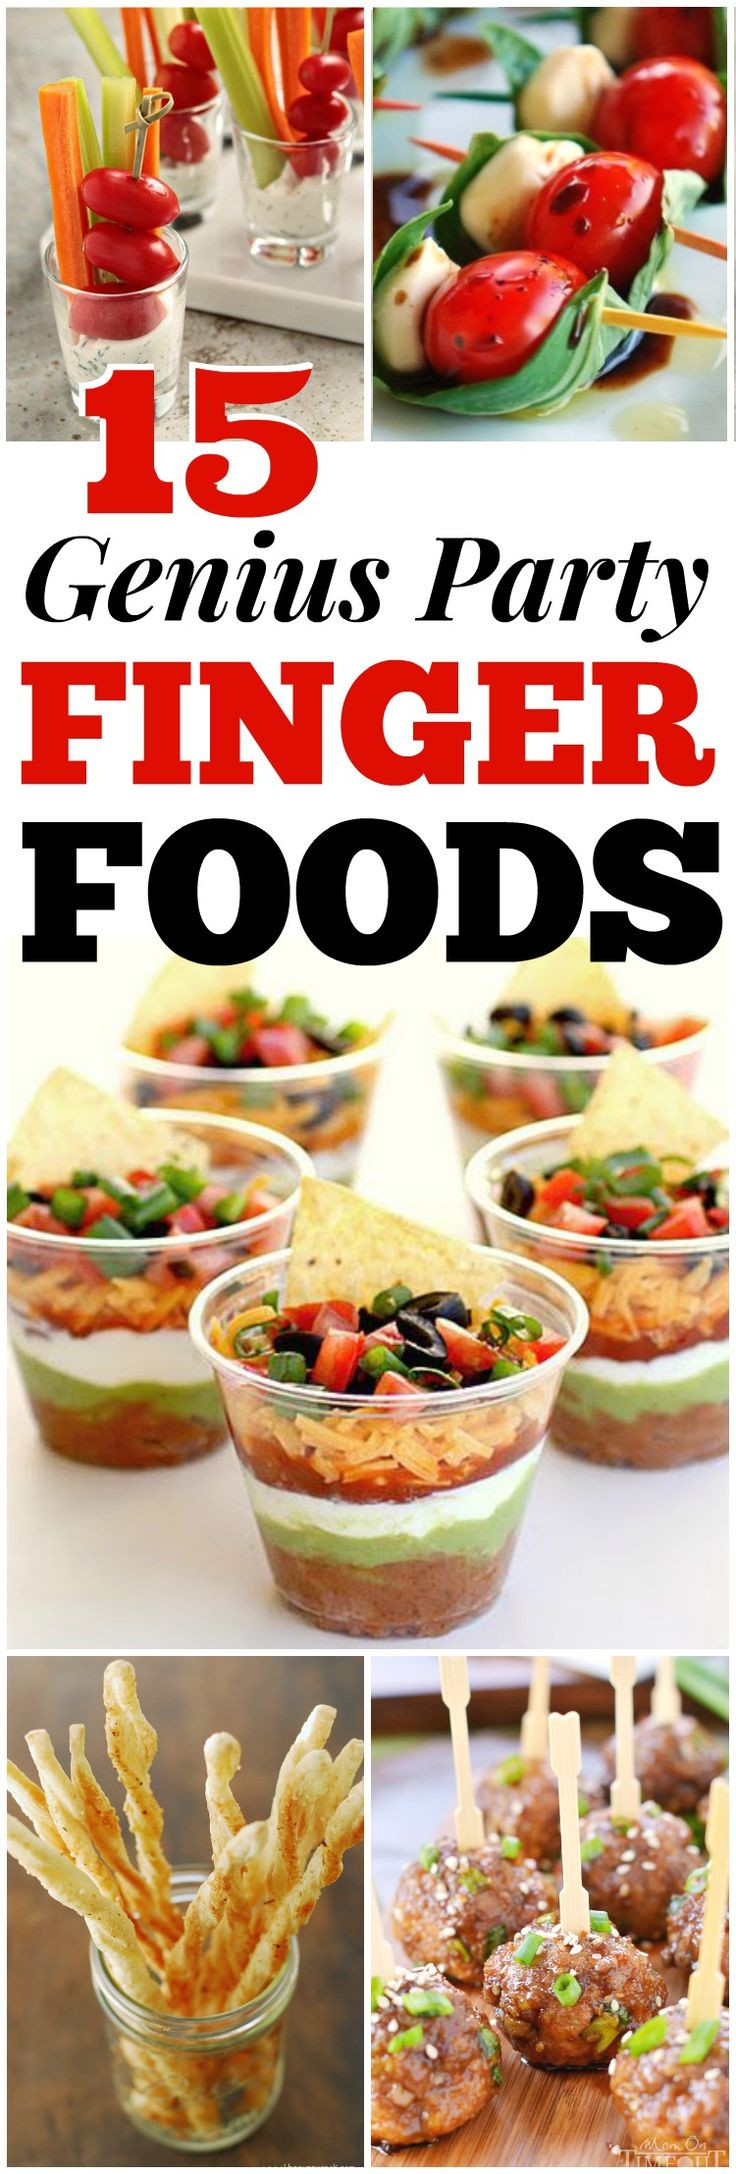 Christmas Party Appetizers Finger Foods
 De 25 bedste idéer inden for Party finger foods på Pinterest